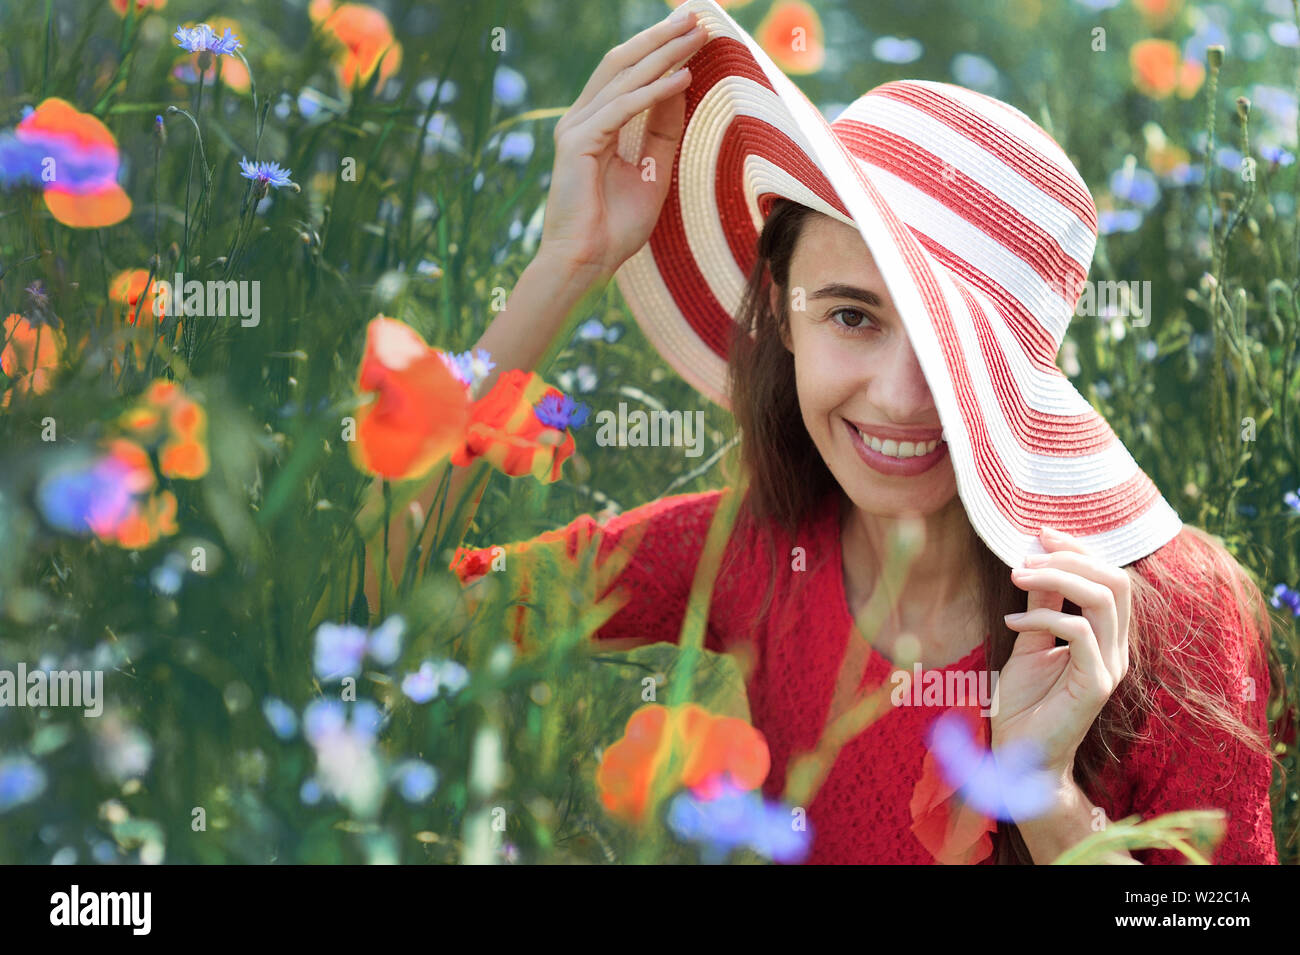 Verträumte Frau im roten Kleid und einem grossen Rot gestreifte Hut sitzt im schönen Kraut blühenden Mohnfeld Sommer. Vintage elegant romantisch aussehen. Konzept Stockfoto